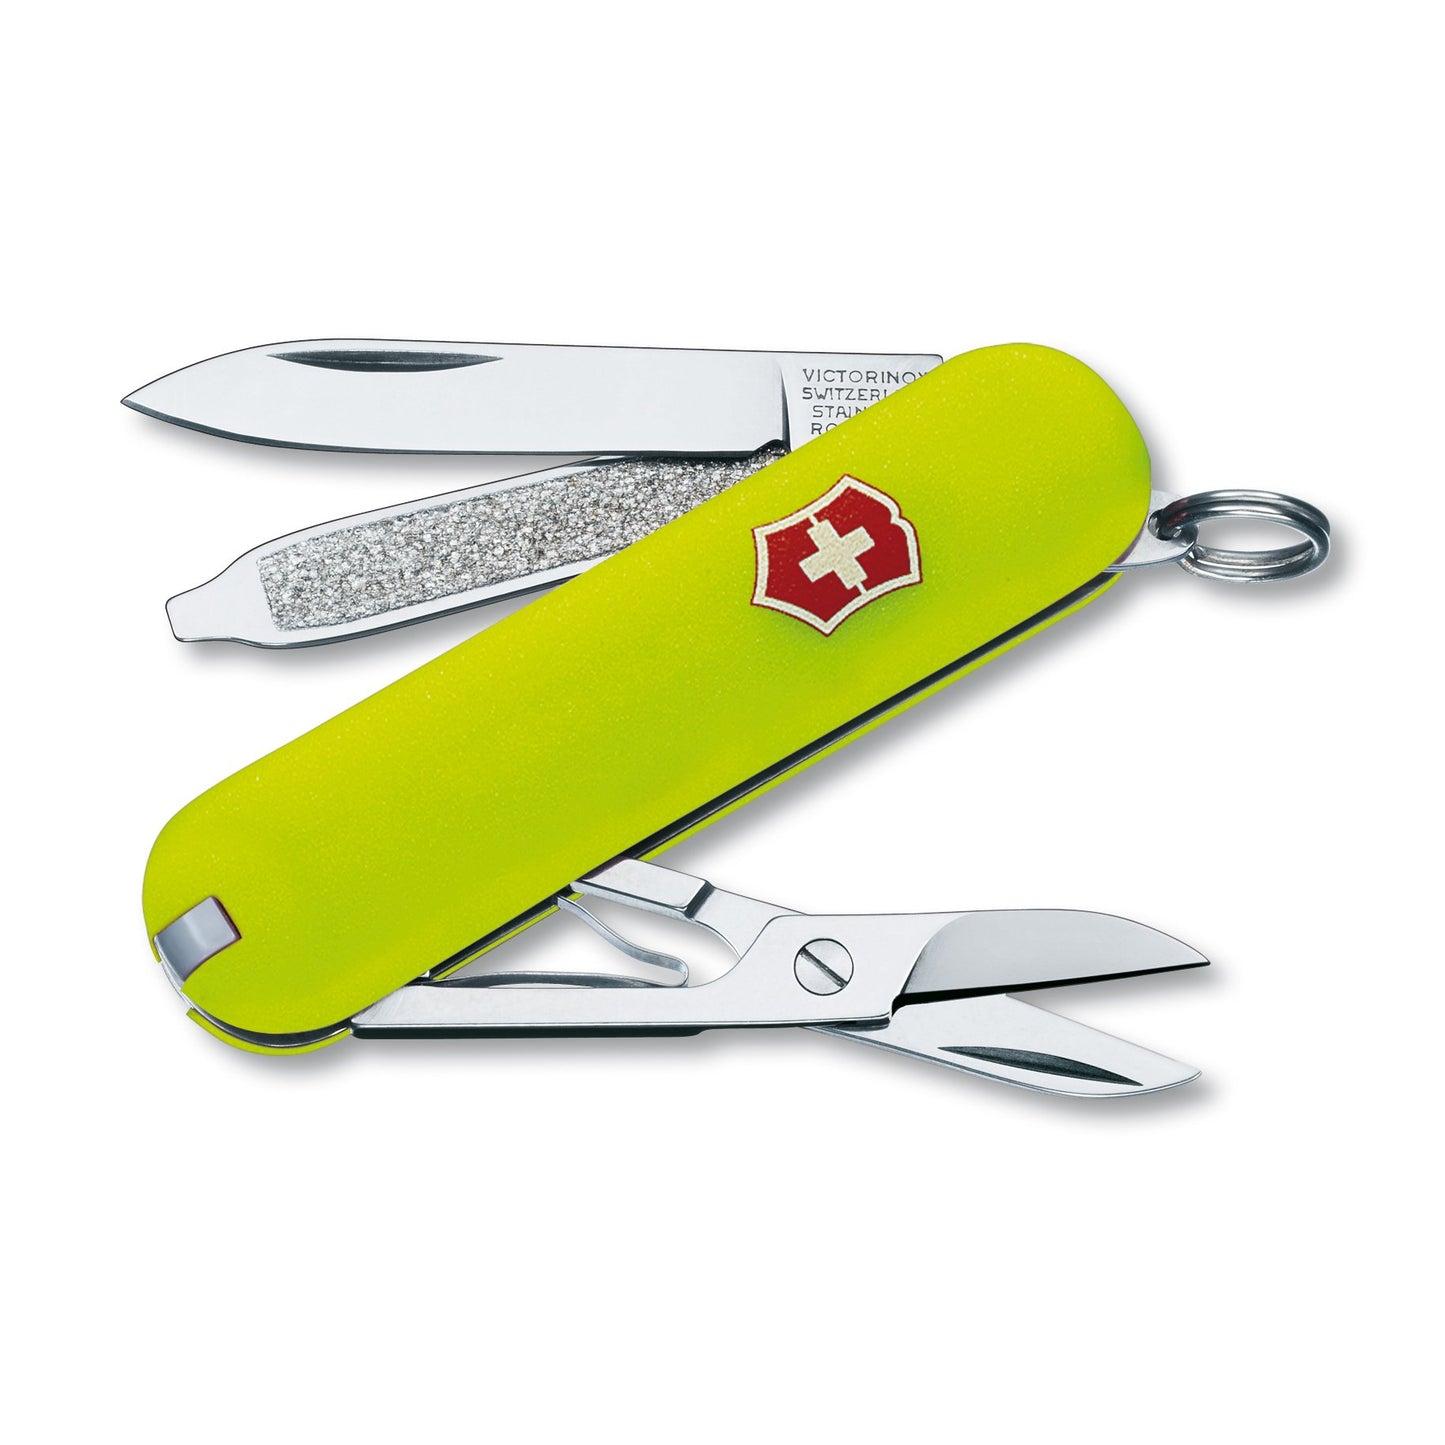 Victorinox Stayglow Swiss Army Classic SD Pocket Knife